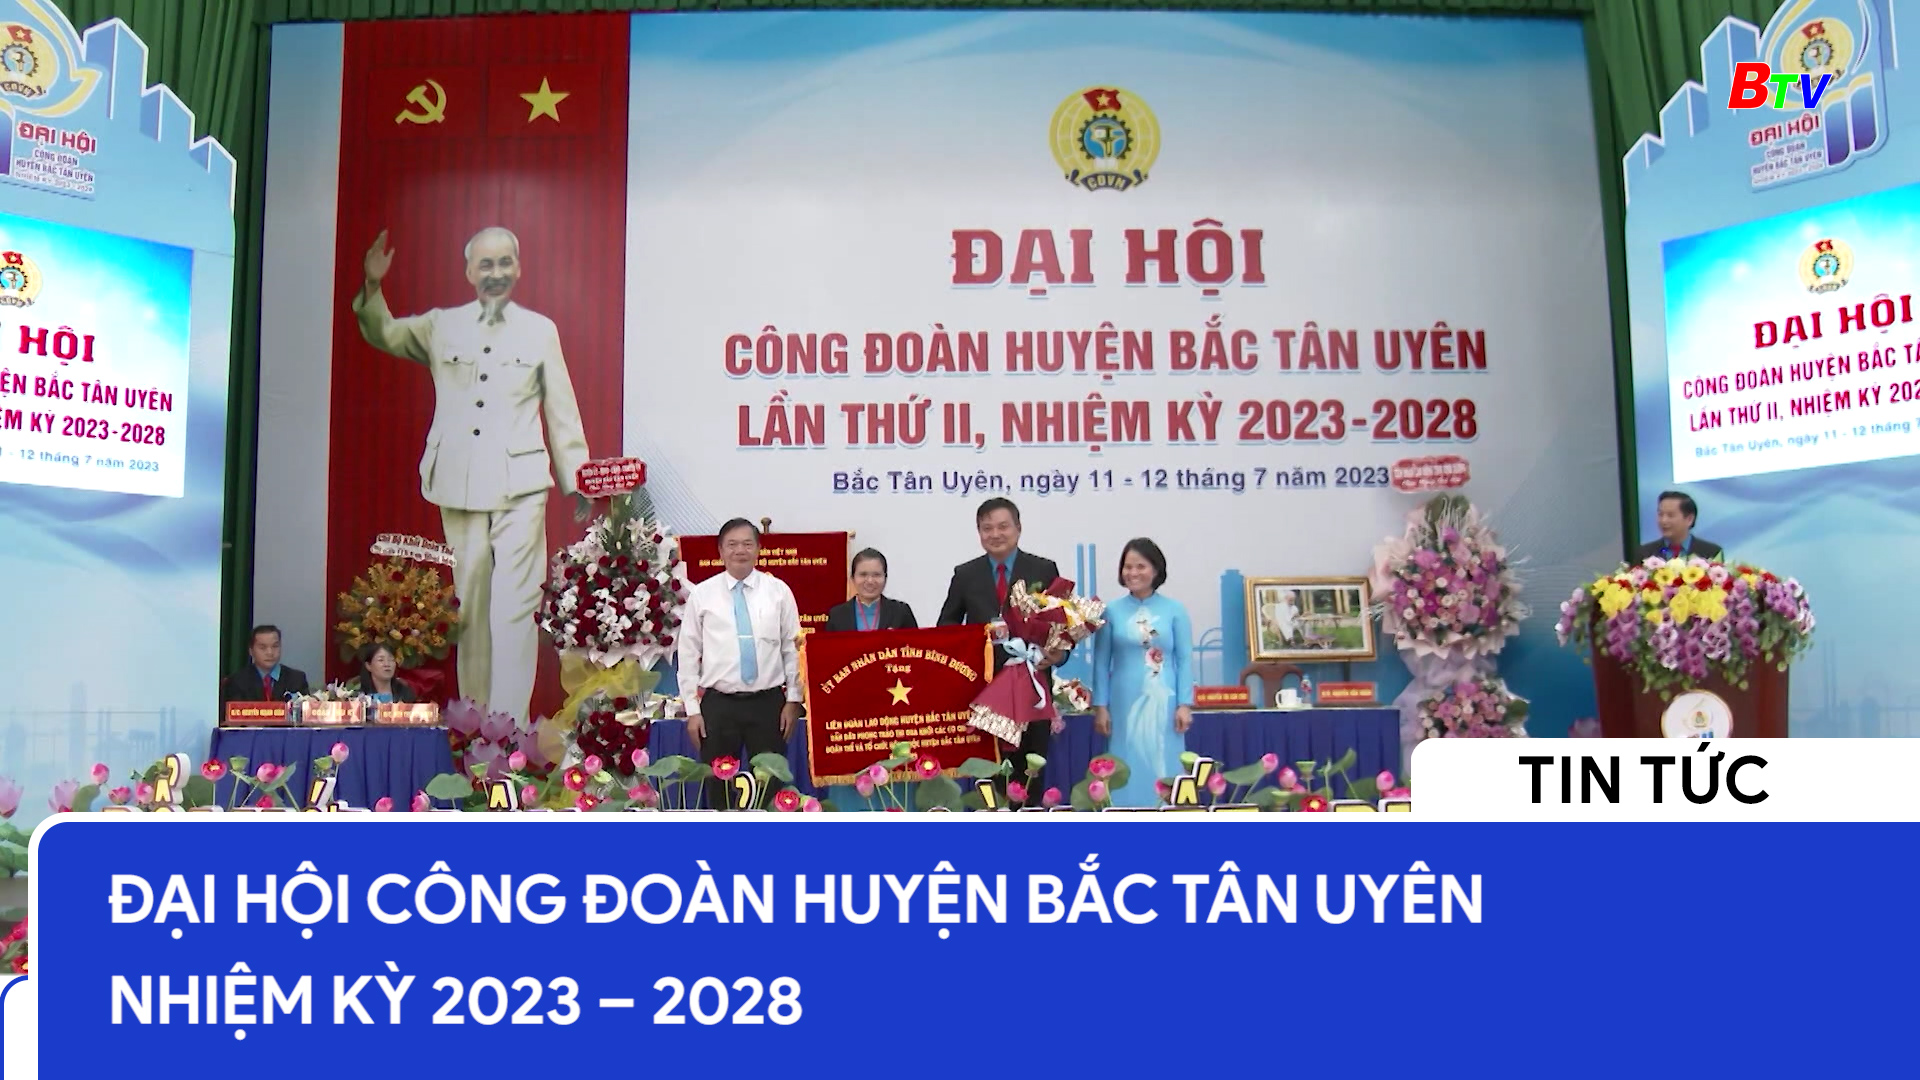 Đại hội Công đoàn huyện Bắc Tân Uyên nhiệm kỳ 2023 – 2028